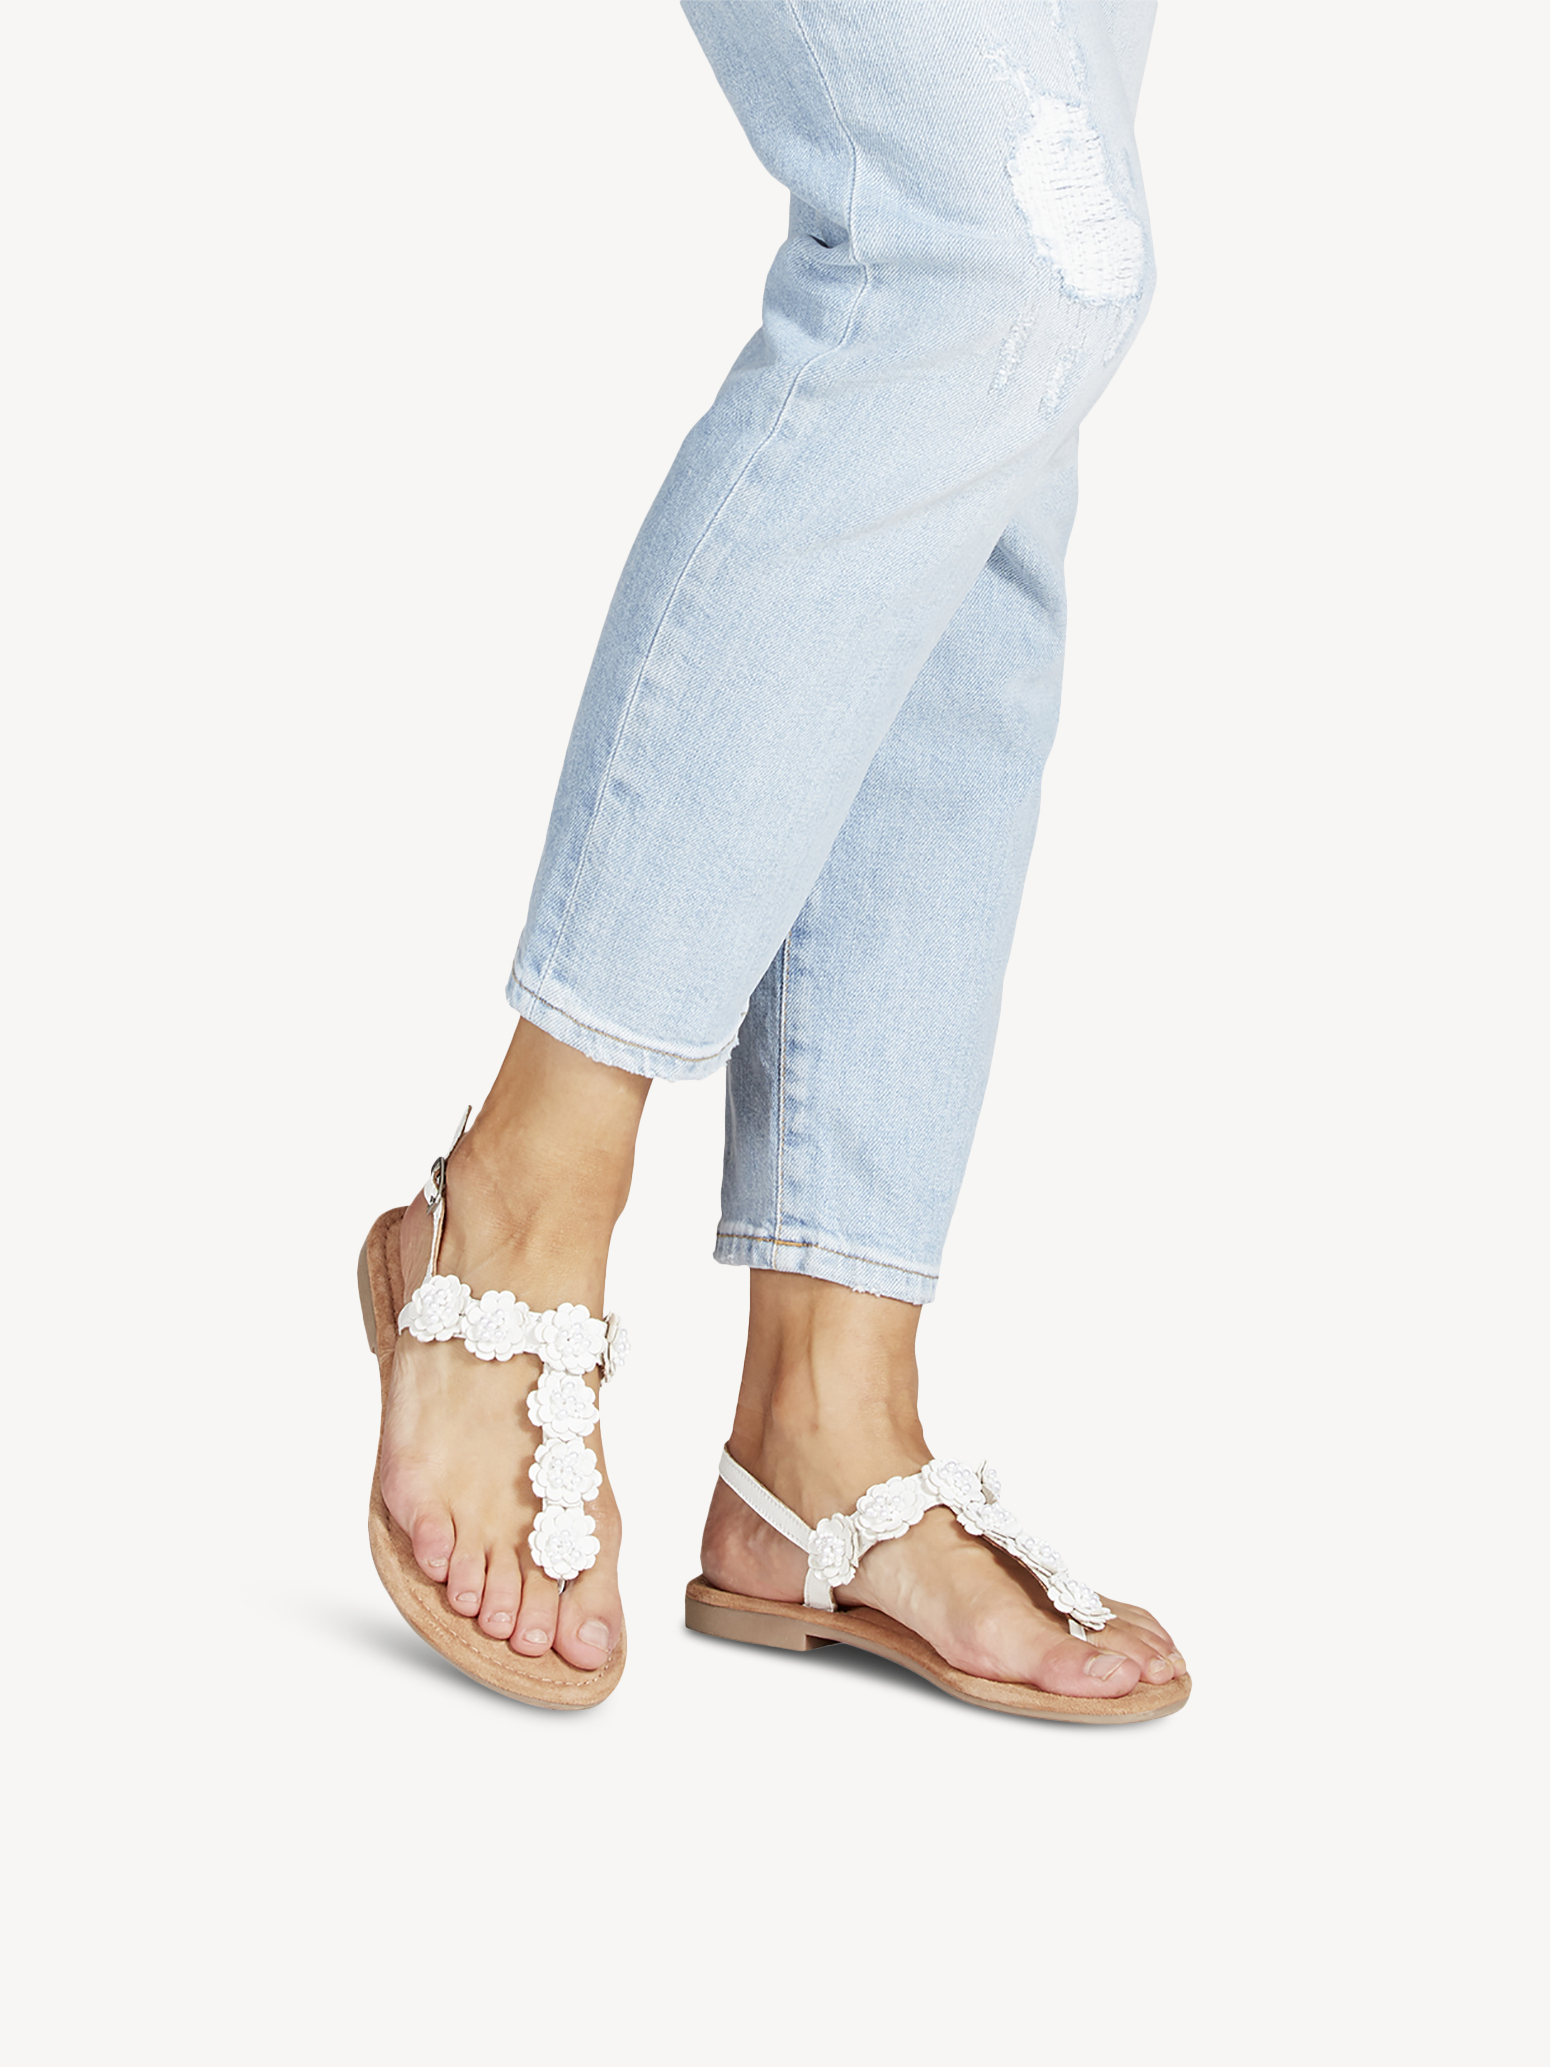 Туфли летние открытые жен. (белый) - изображение №1